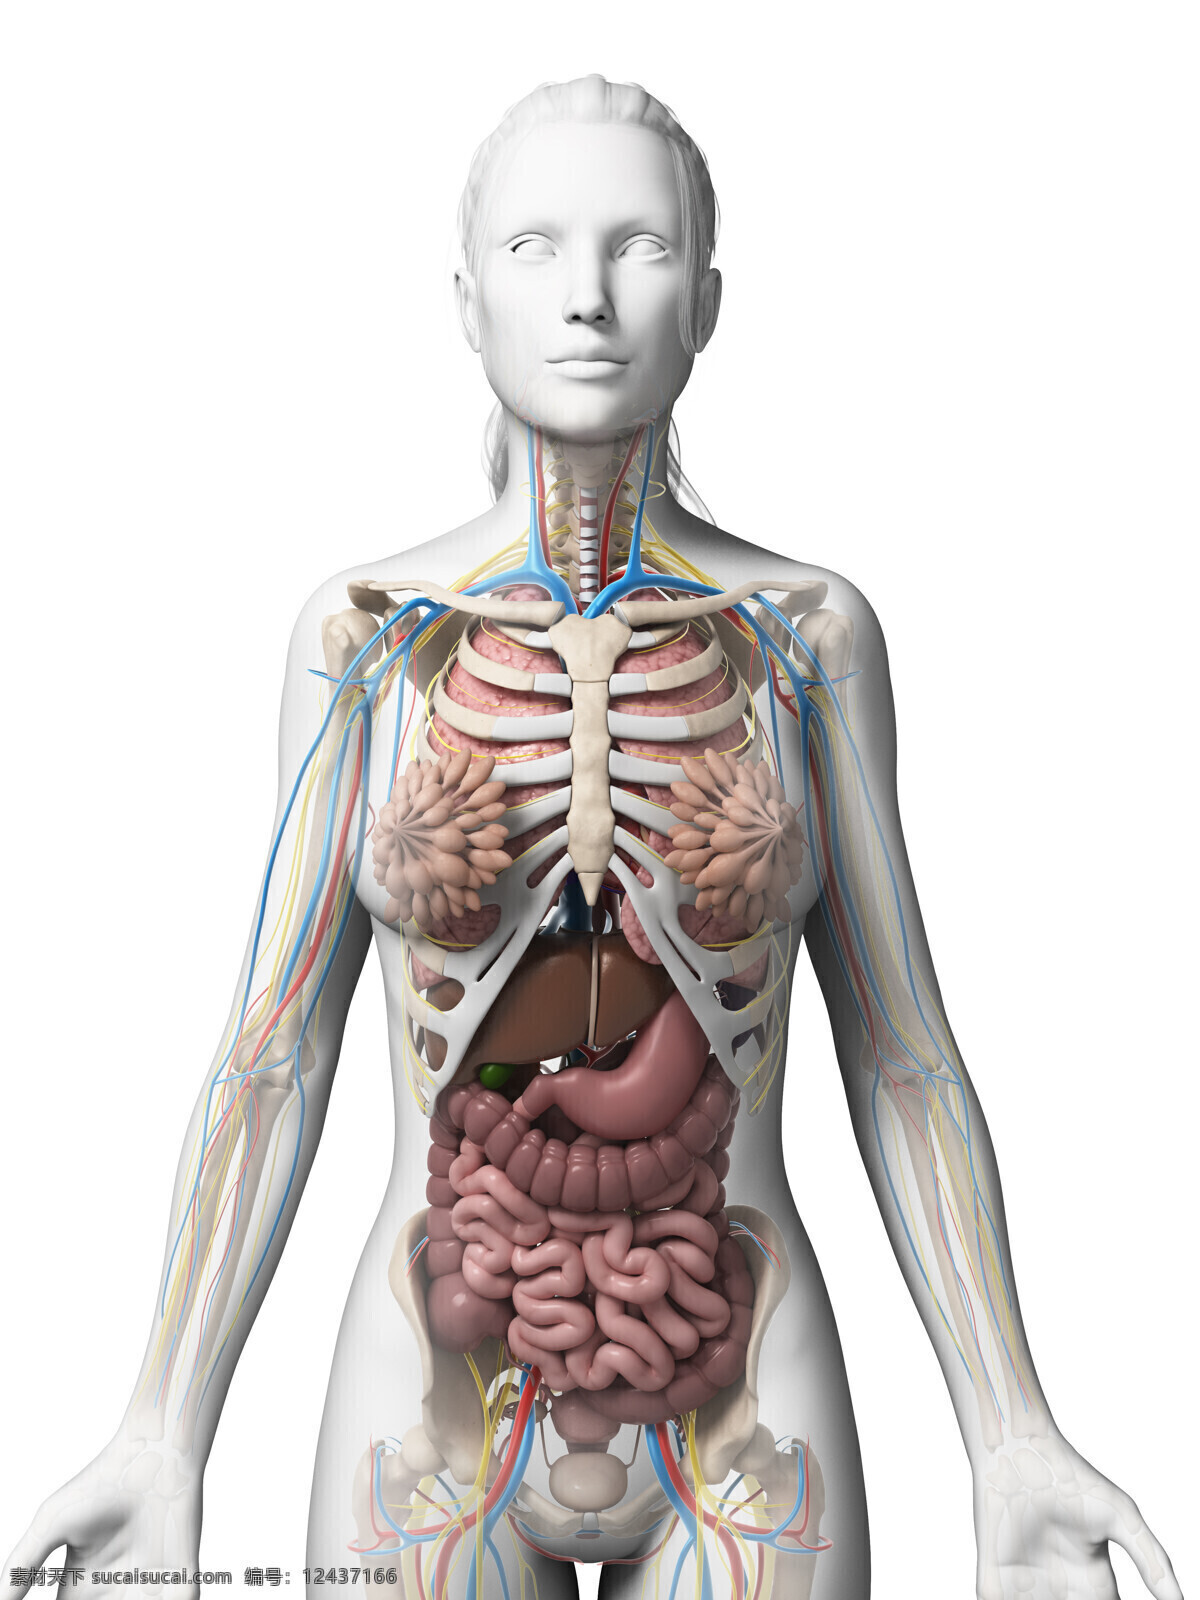 女性 内脏 器官 女性器官 内脏器官 器官模型 乳腺 肠胃器官 肝脏器官 人体器官 医学图片 医疗护理 现代科技